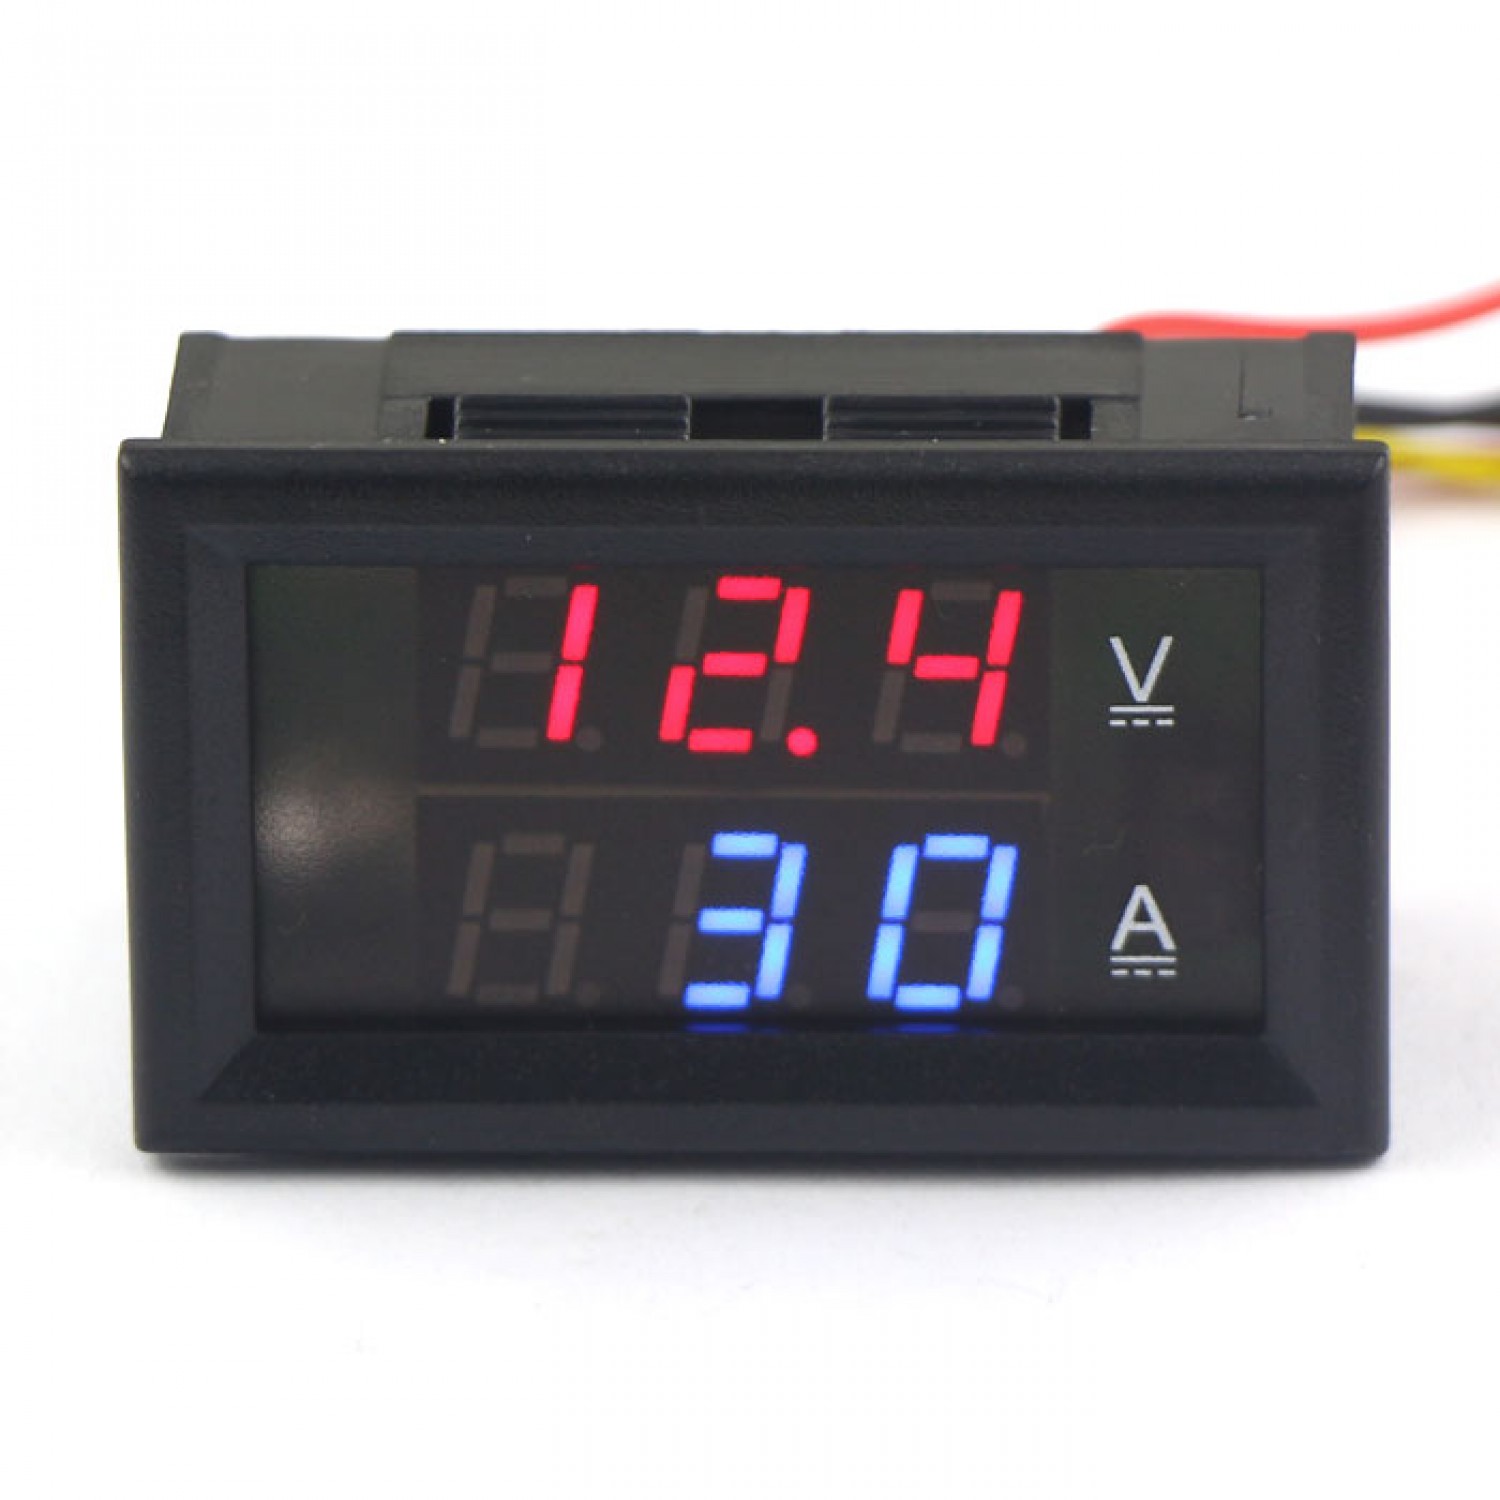 2V DC 5V 3.5 Digit Digital LED Voltage VoltMeter Panel Meter Blue Color 